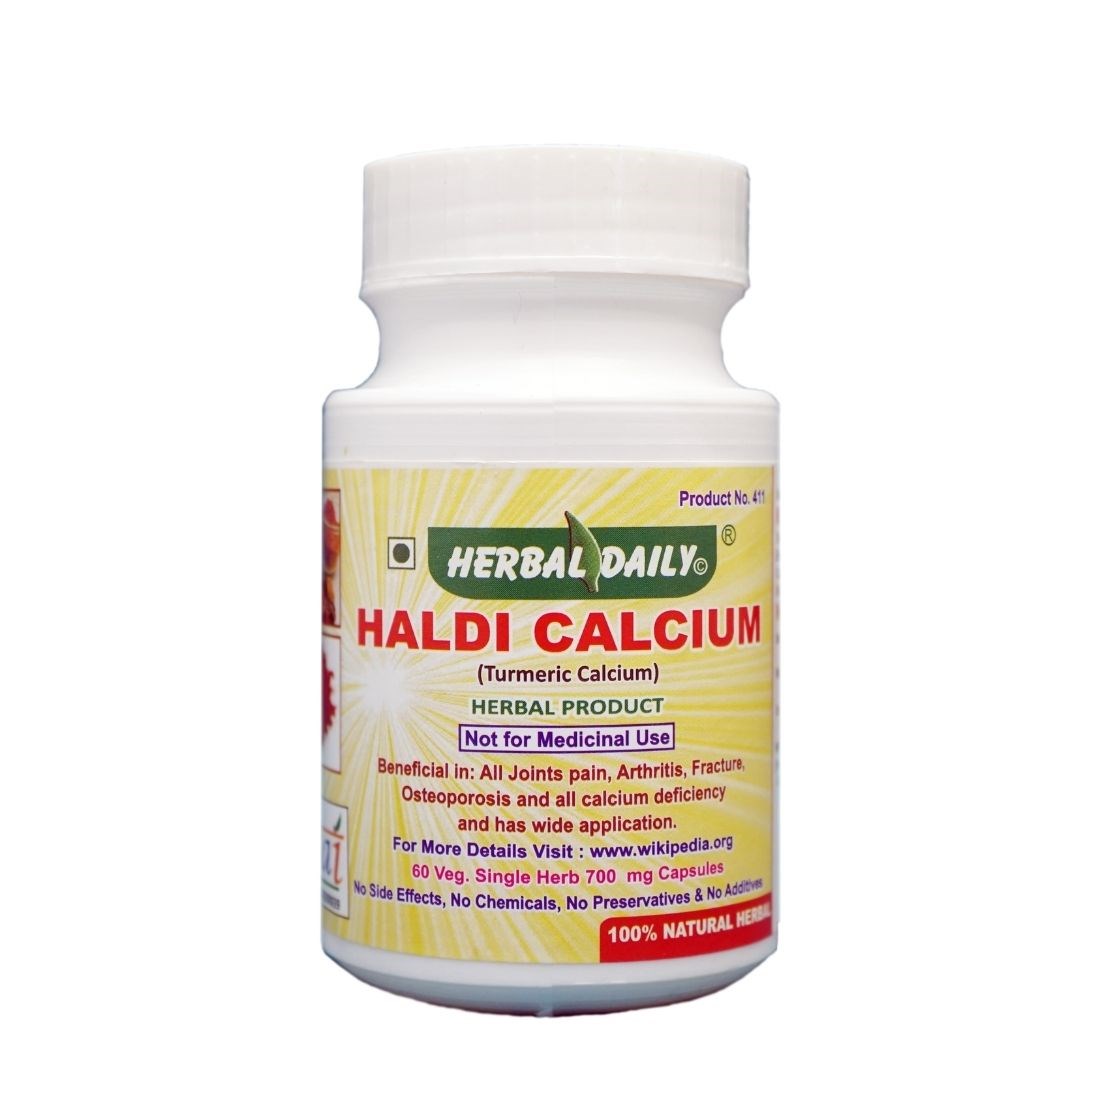 Haldi Calcium Veg. capsules